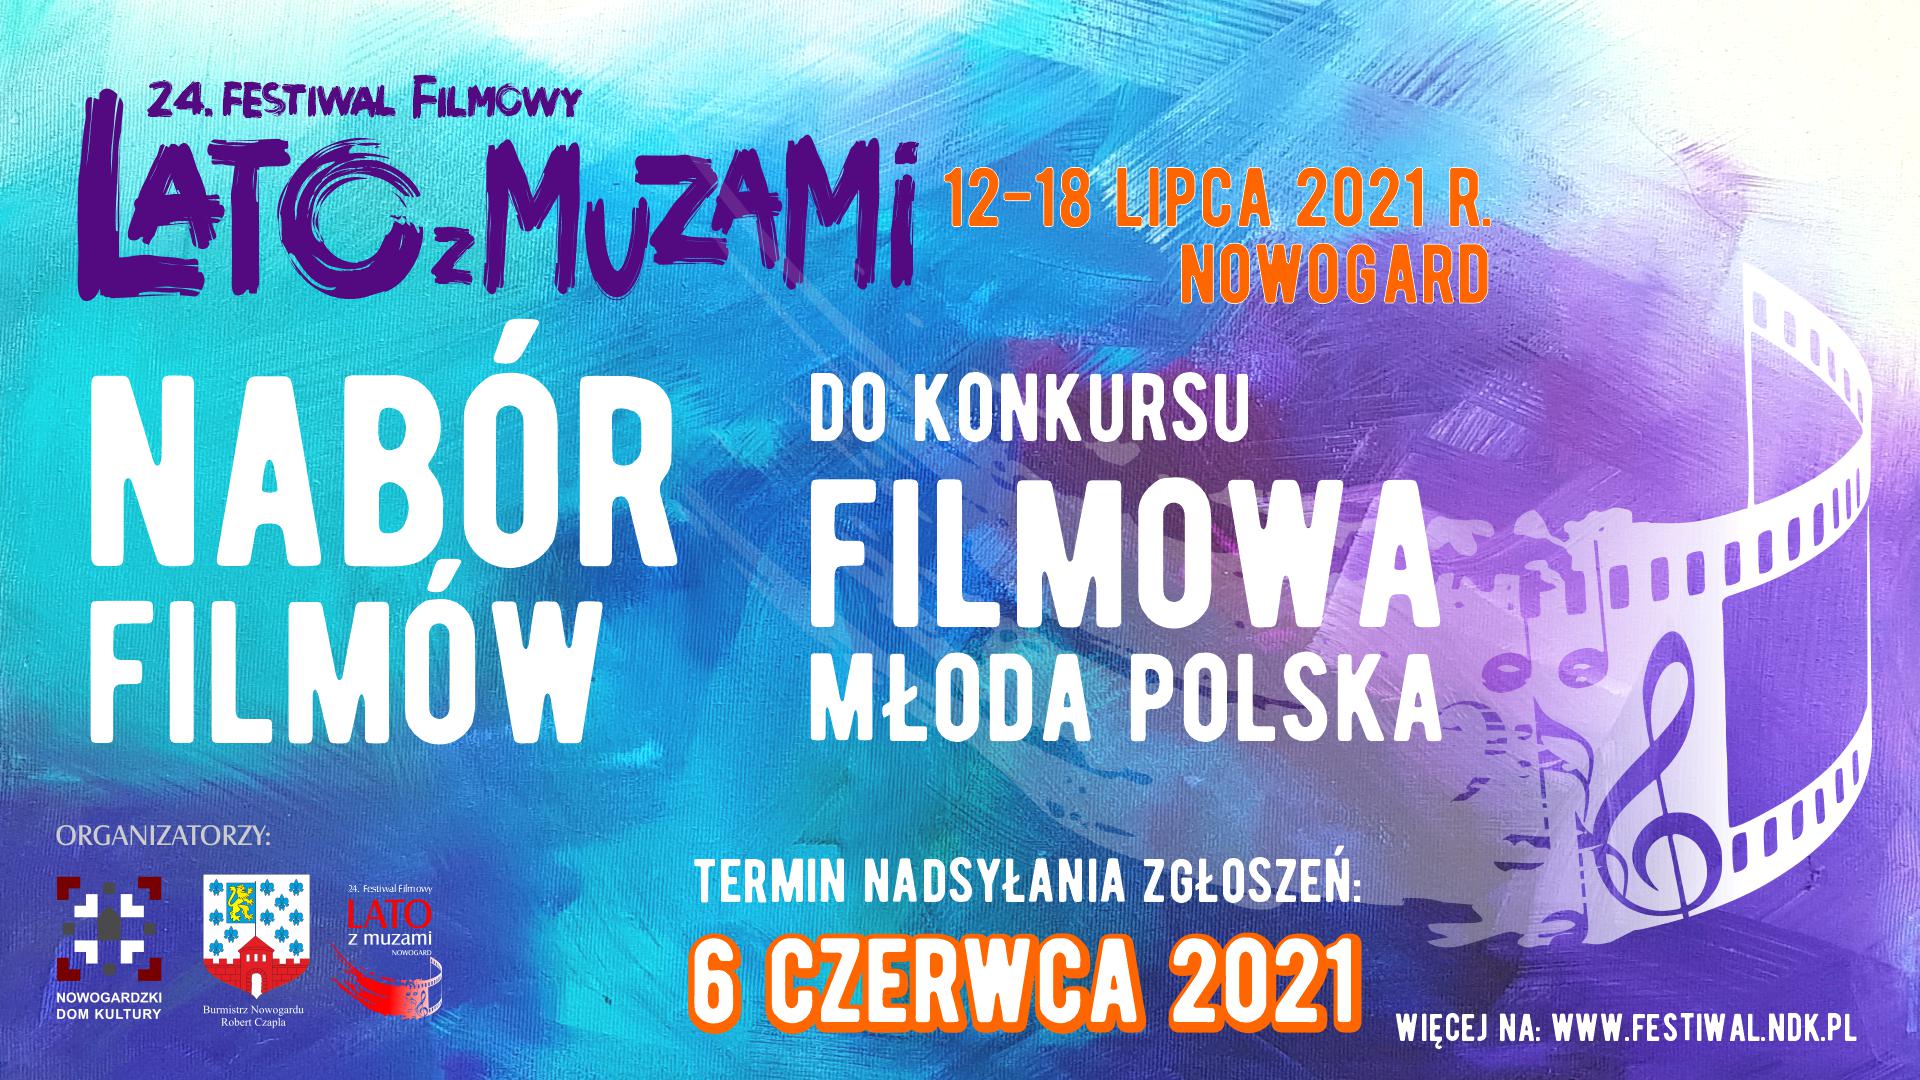 LzM |REKORDOWA LICZBA ZGŁOSZEŃ na Konkurs Filmowa Młoda Polska!